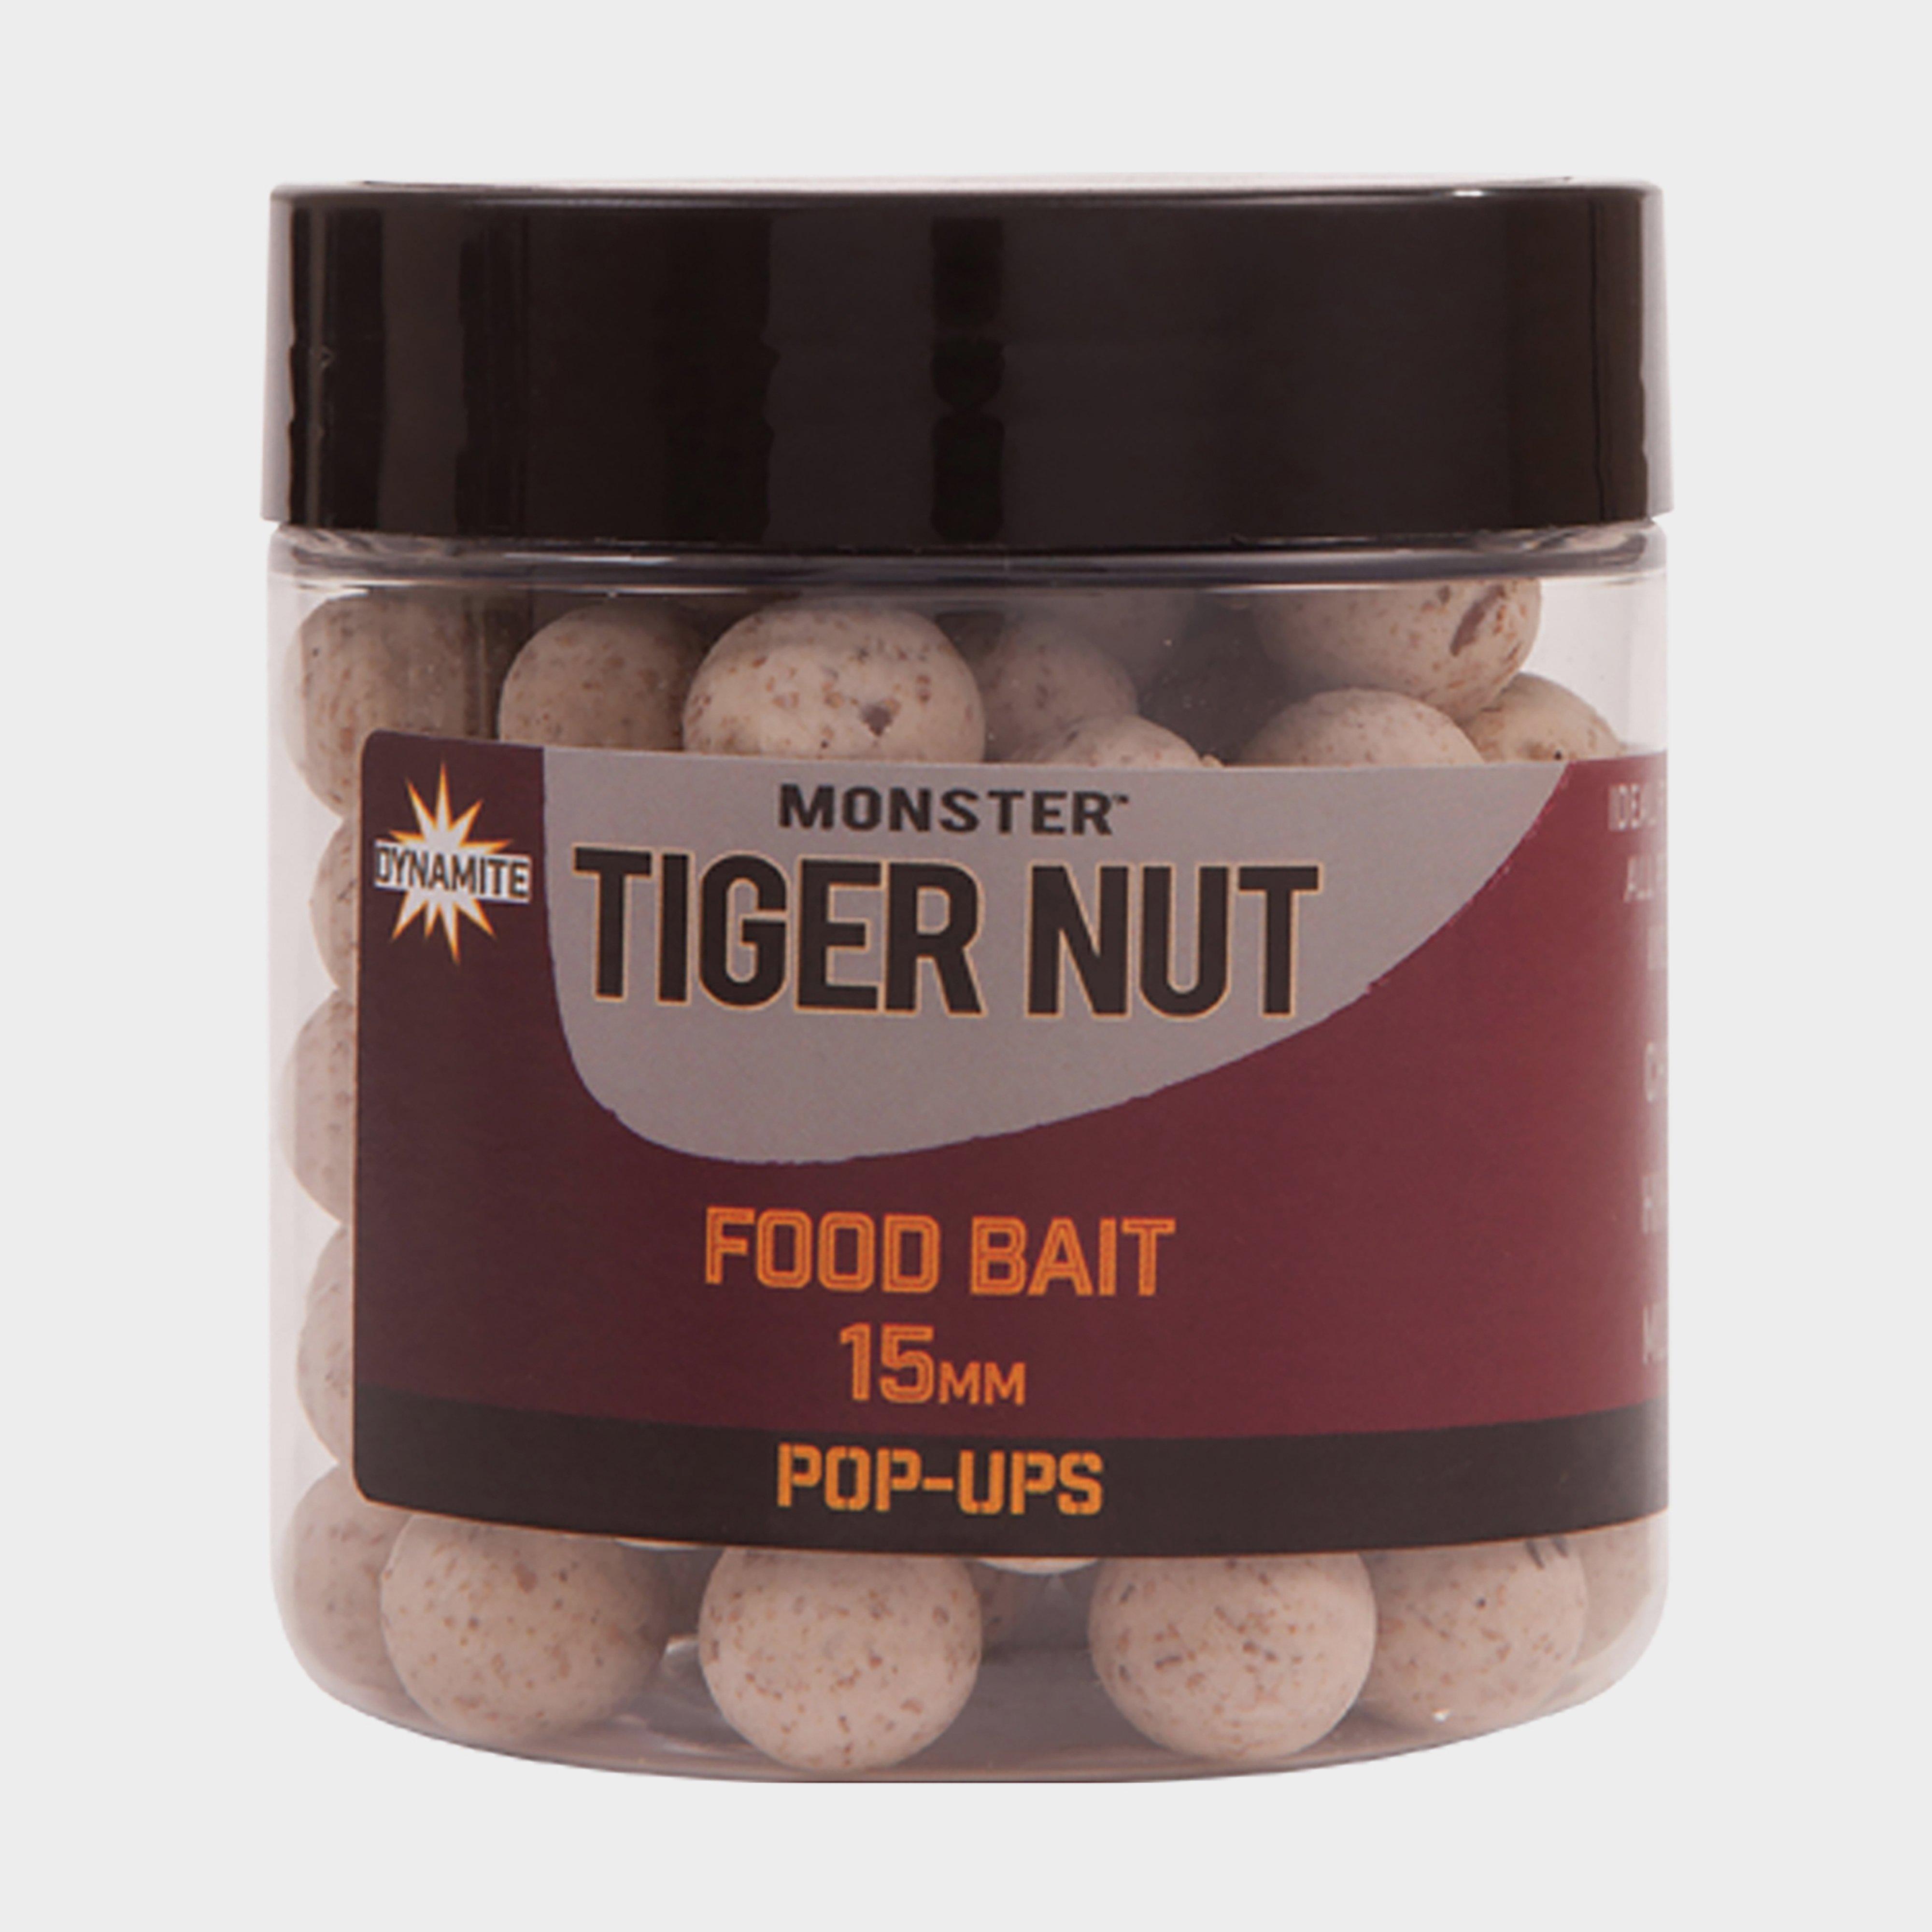 Dynamite Monster Tigernut Pop Ups (15mm) - Tub/tub  Tub/tub